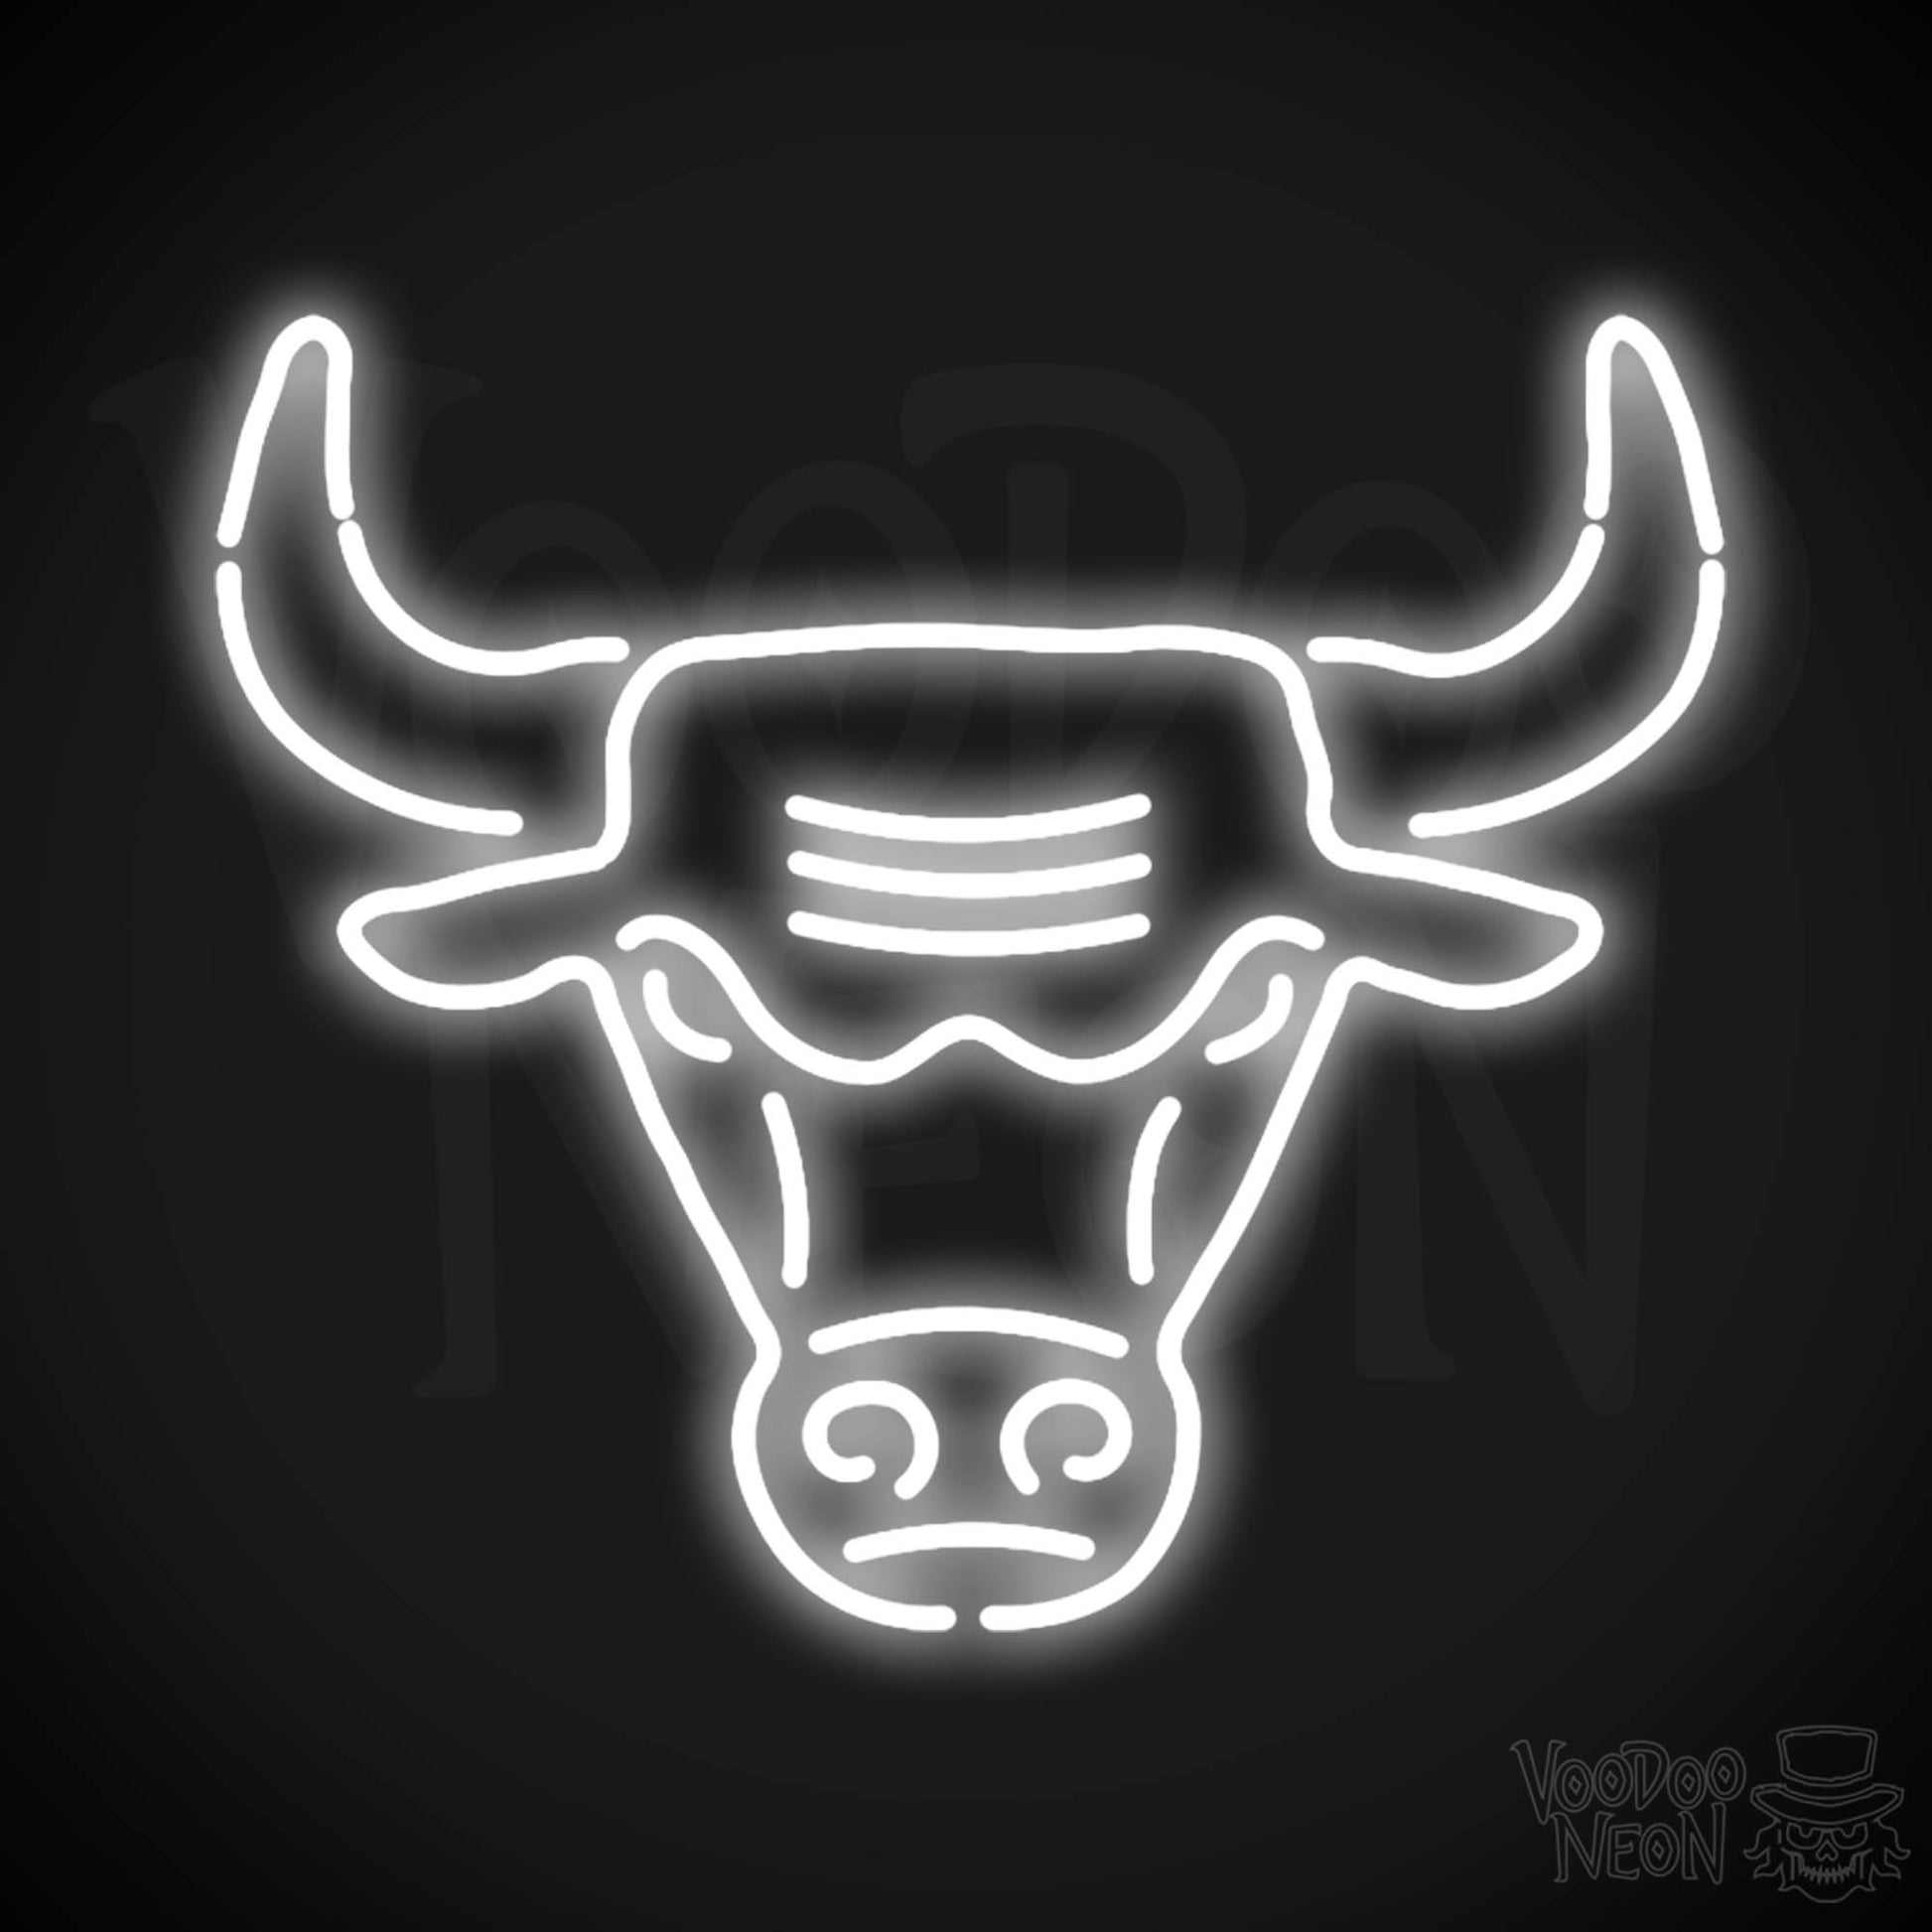 Chicago Bulls Neon Sign - Chicago Bulls Sign - Neon Bulls Logo Wall Art - Color White